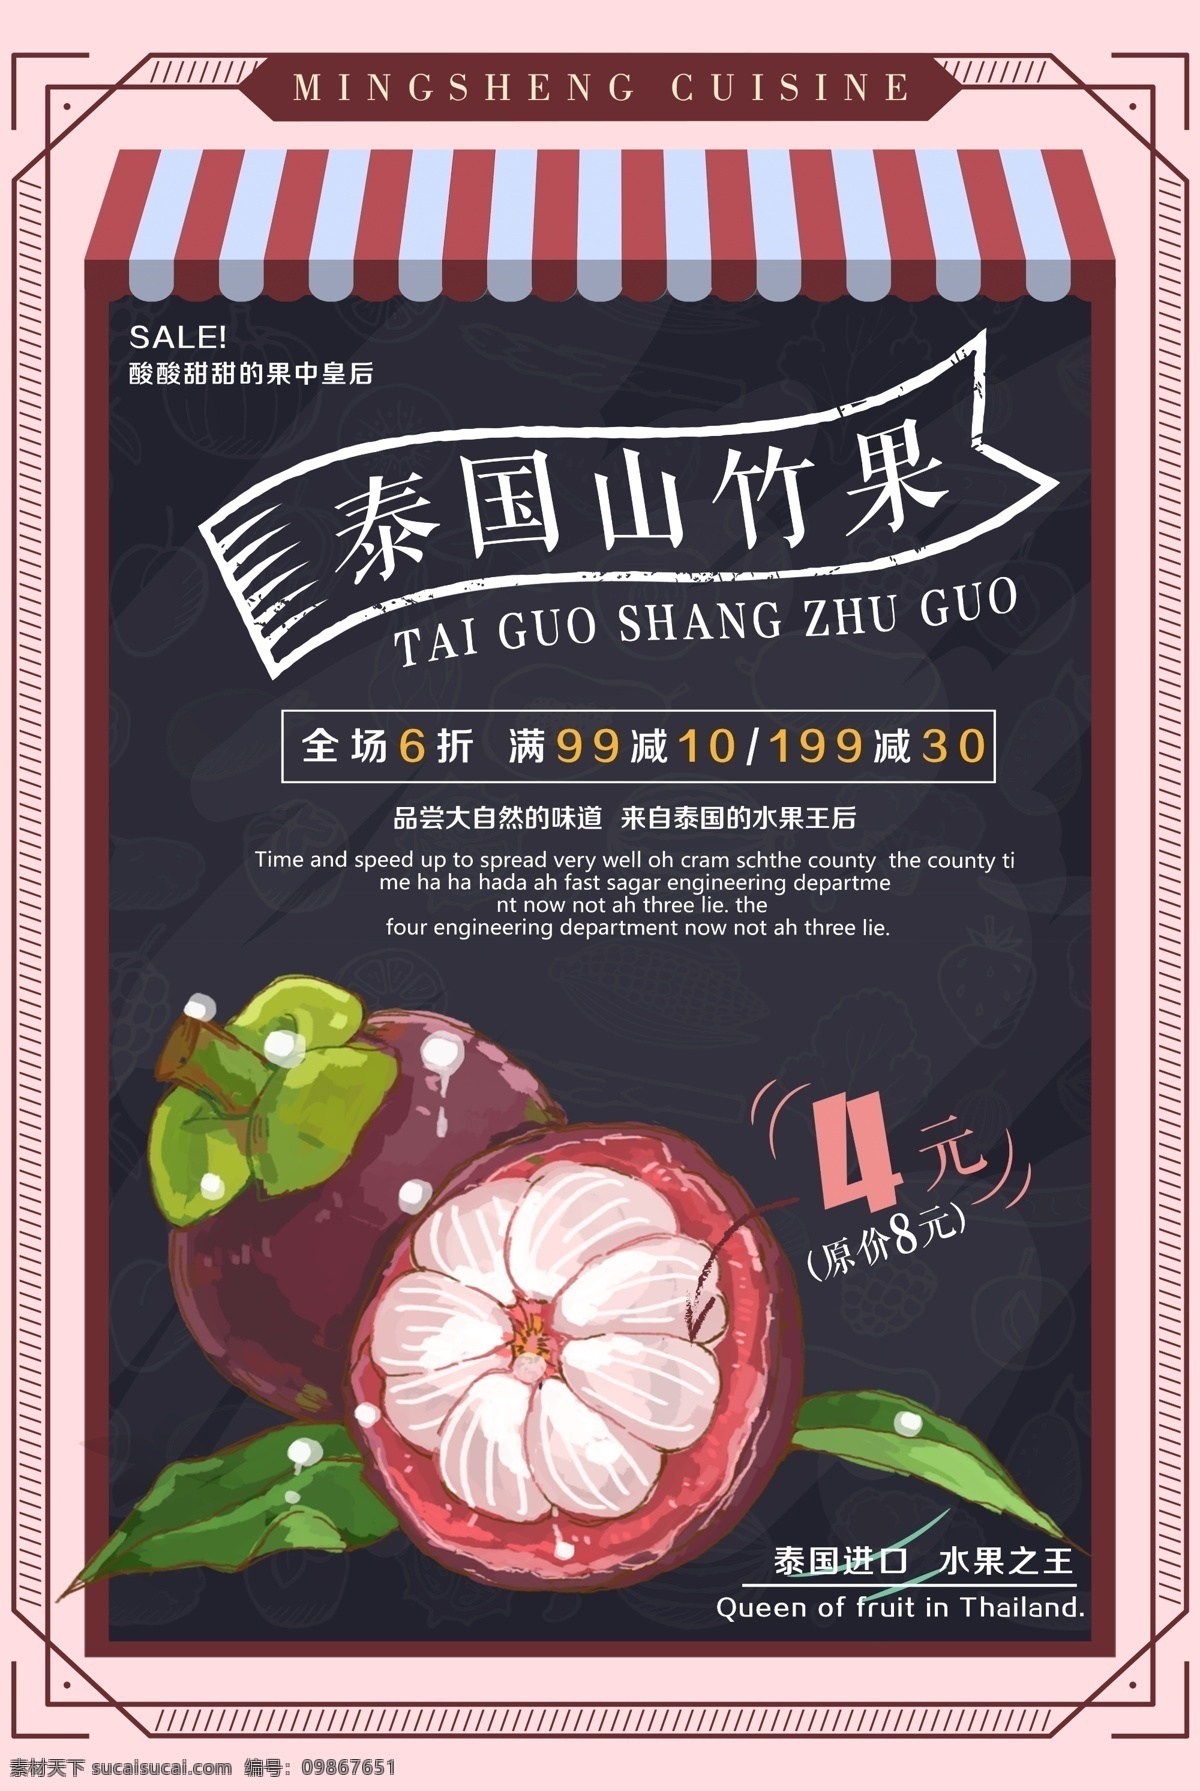 新鲜 水果 山竹 海报 天然营养 新鲜水果 有机水果 水果专卖 水果店 水果海报 水果超市 热带水果